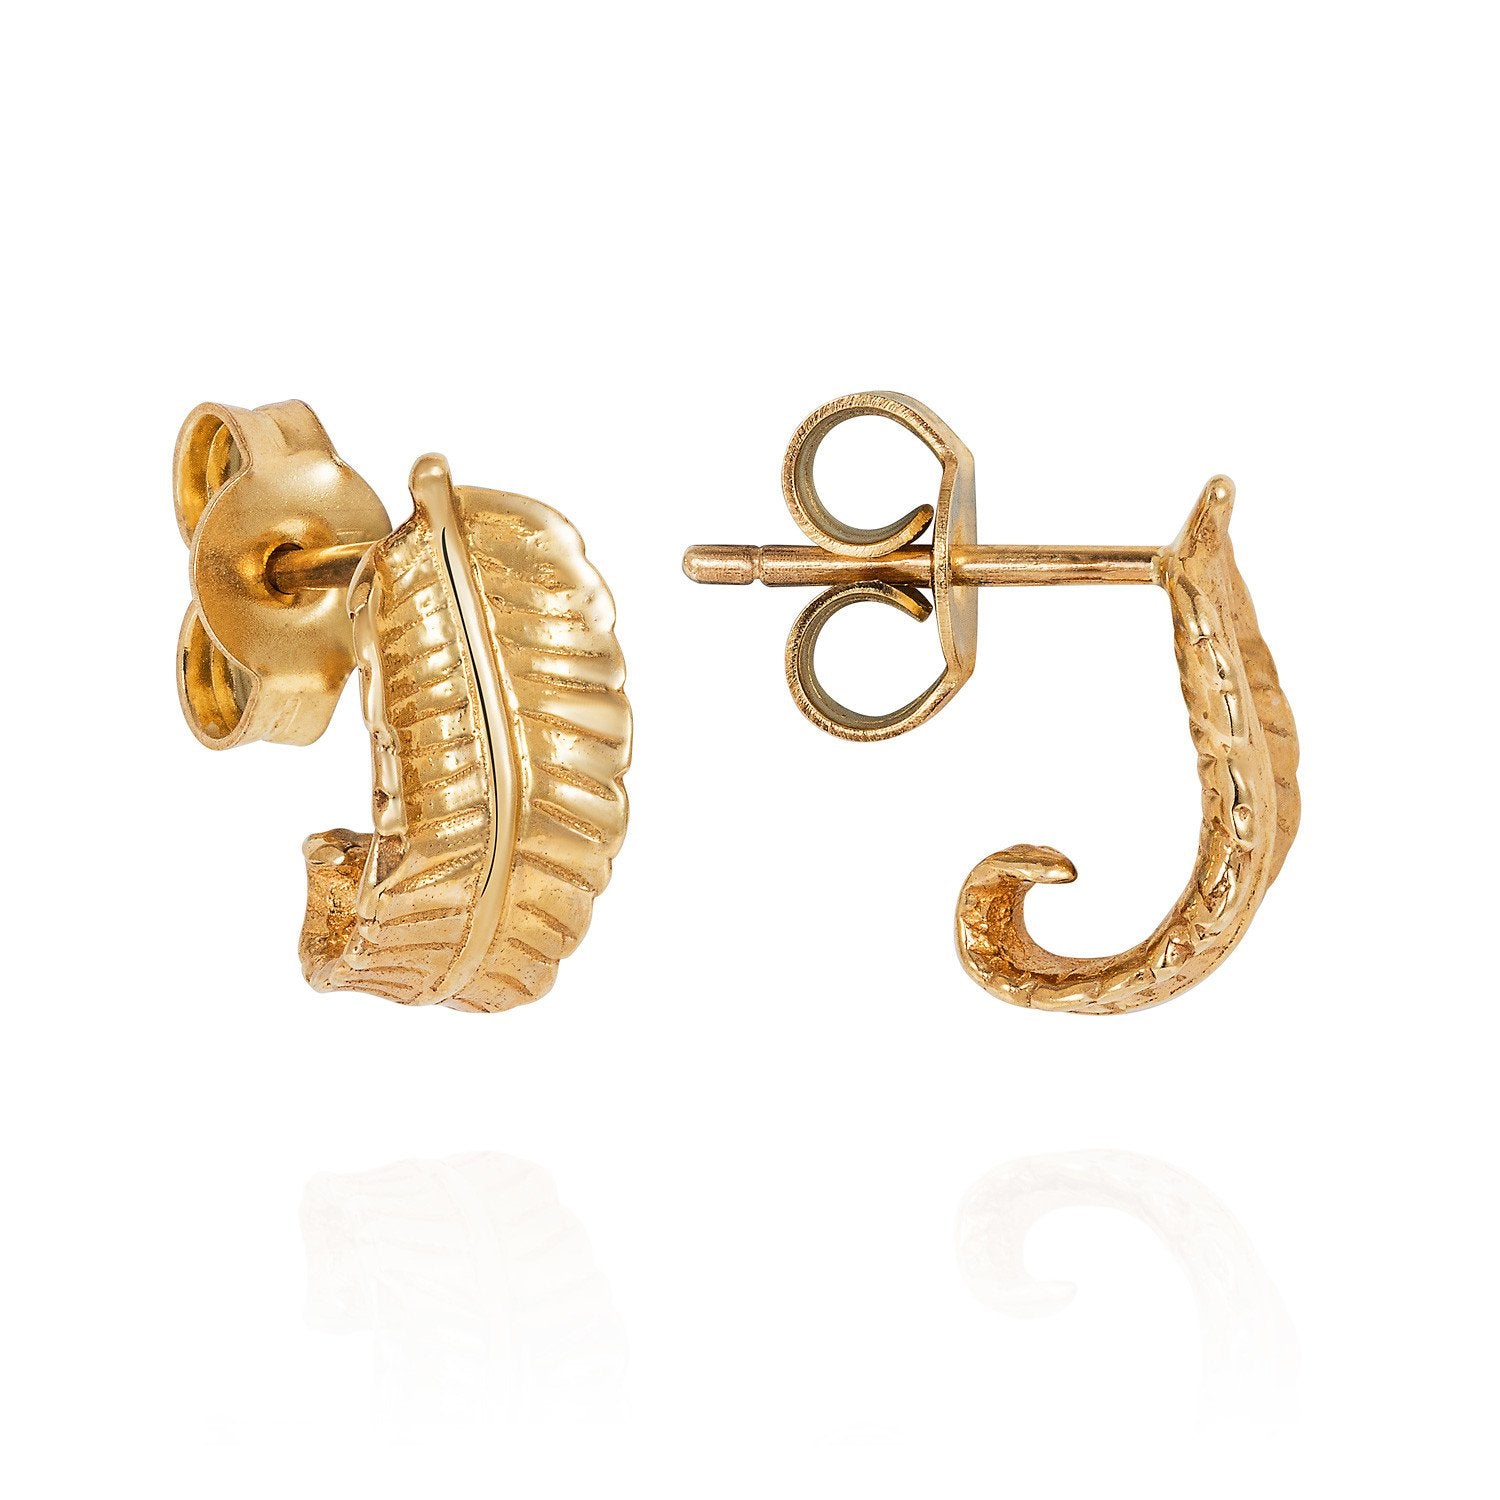 Gold Curled Fern Earrings